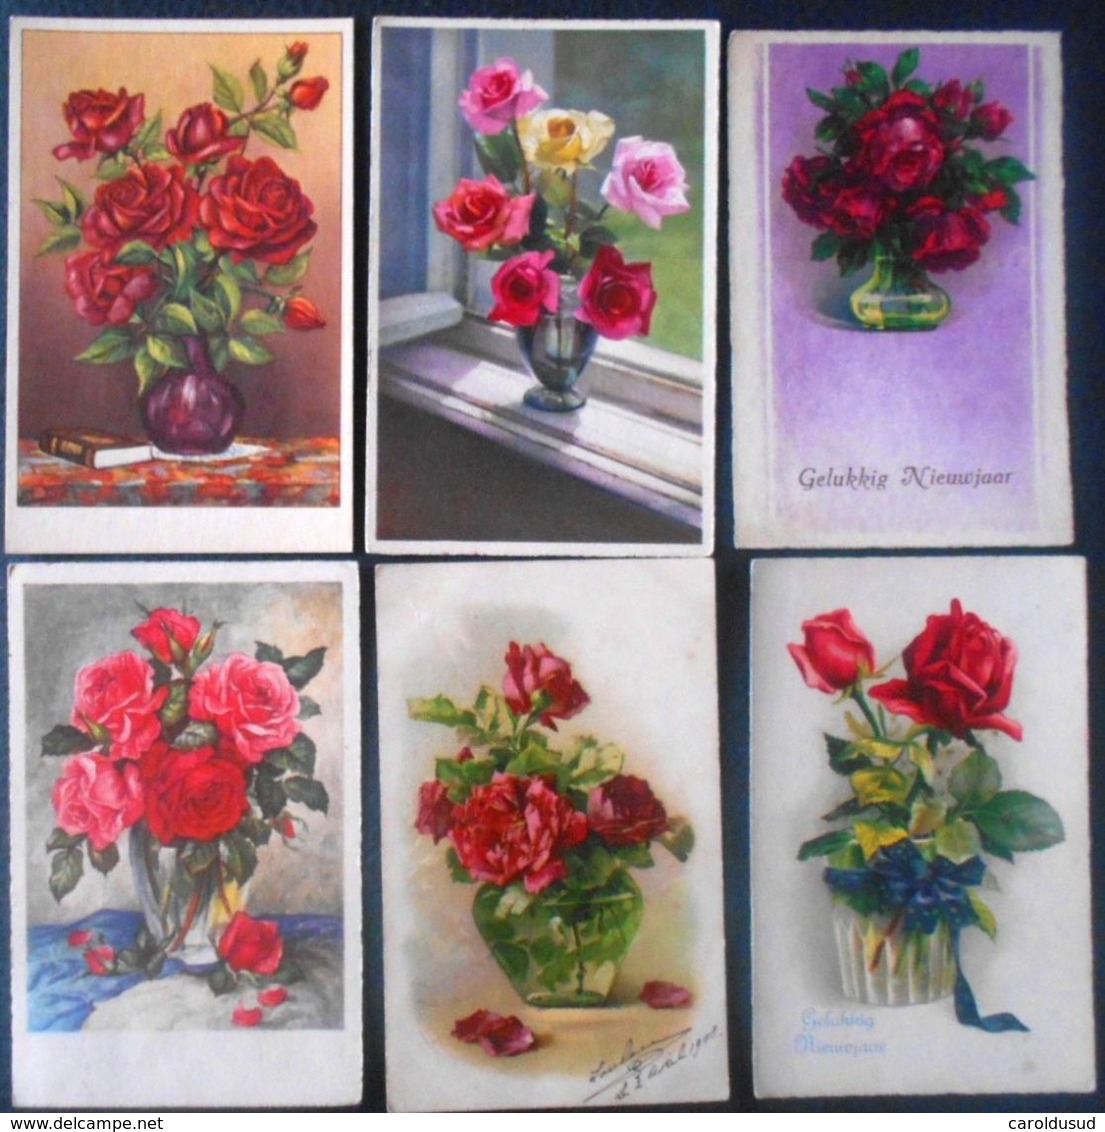 CPA Lot 8x Litho Illustrateur Divers 5x KLEIN BOUQUET ART Rose Roses Dans Vase En Verre Transparent - Sammlungen & Sammellose